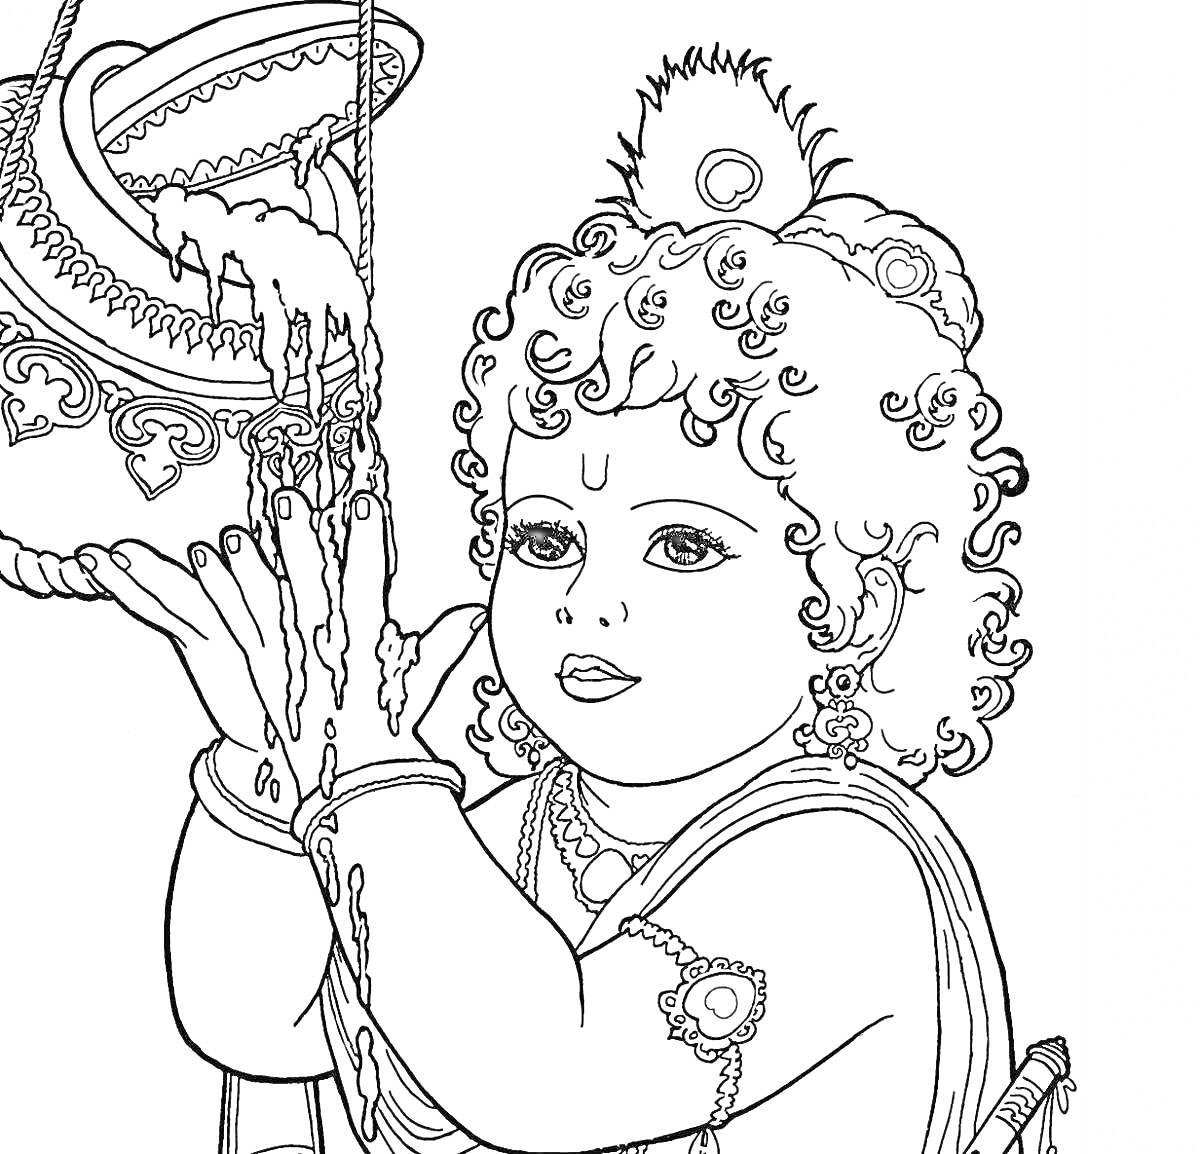 Раскраска Ребенок Кришна с горшком для масла